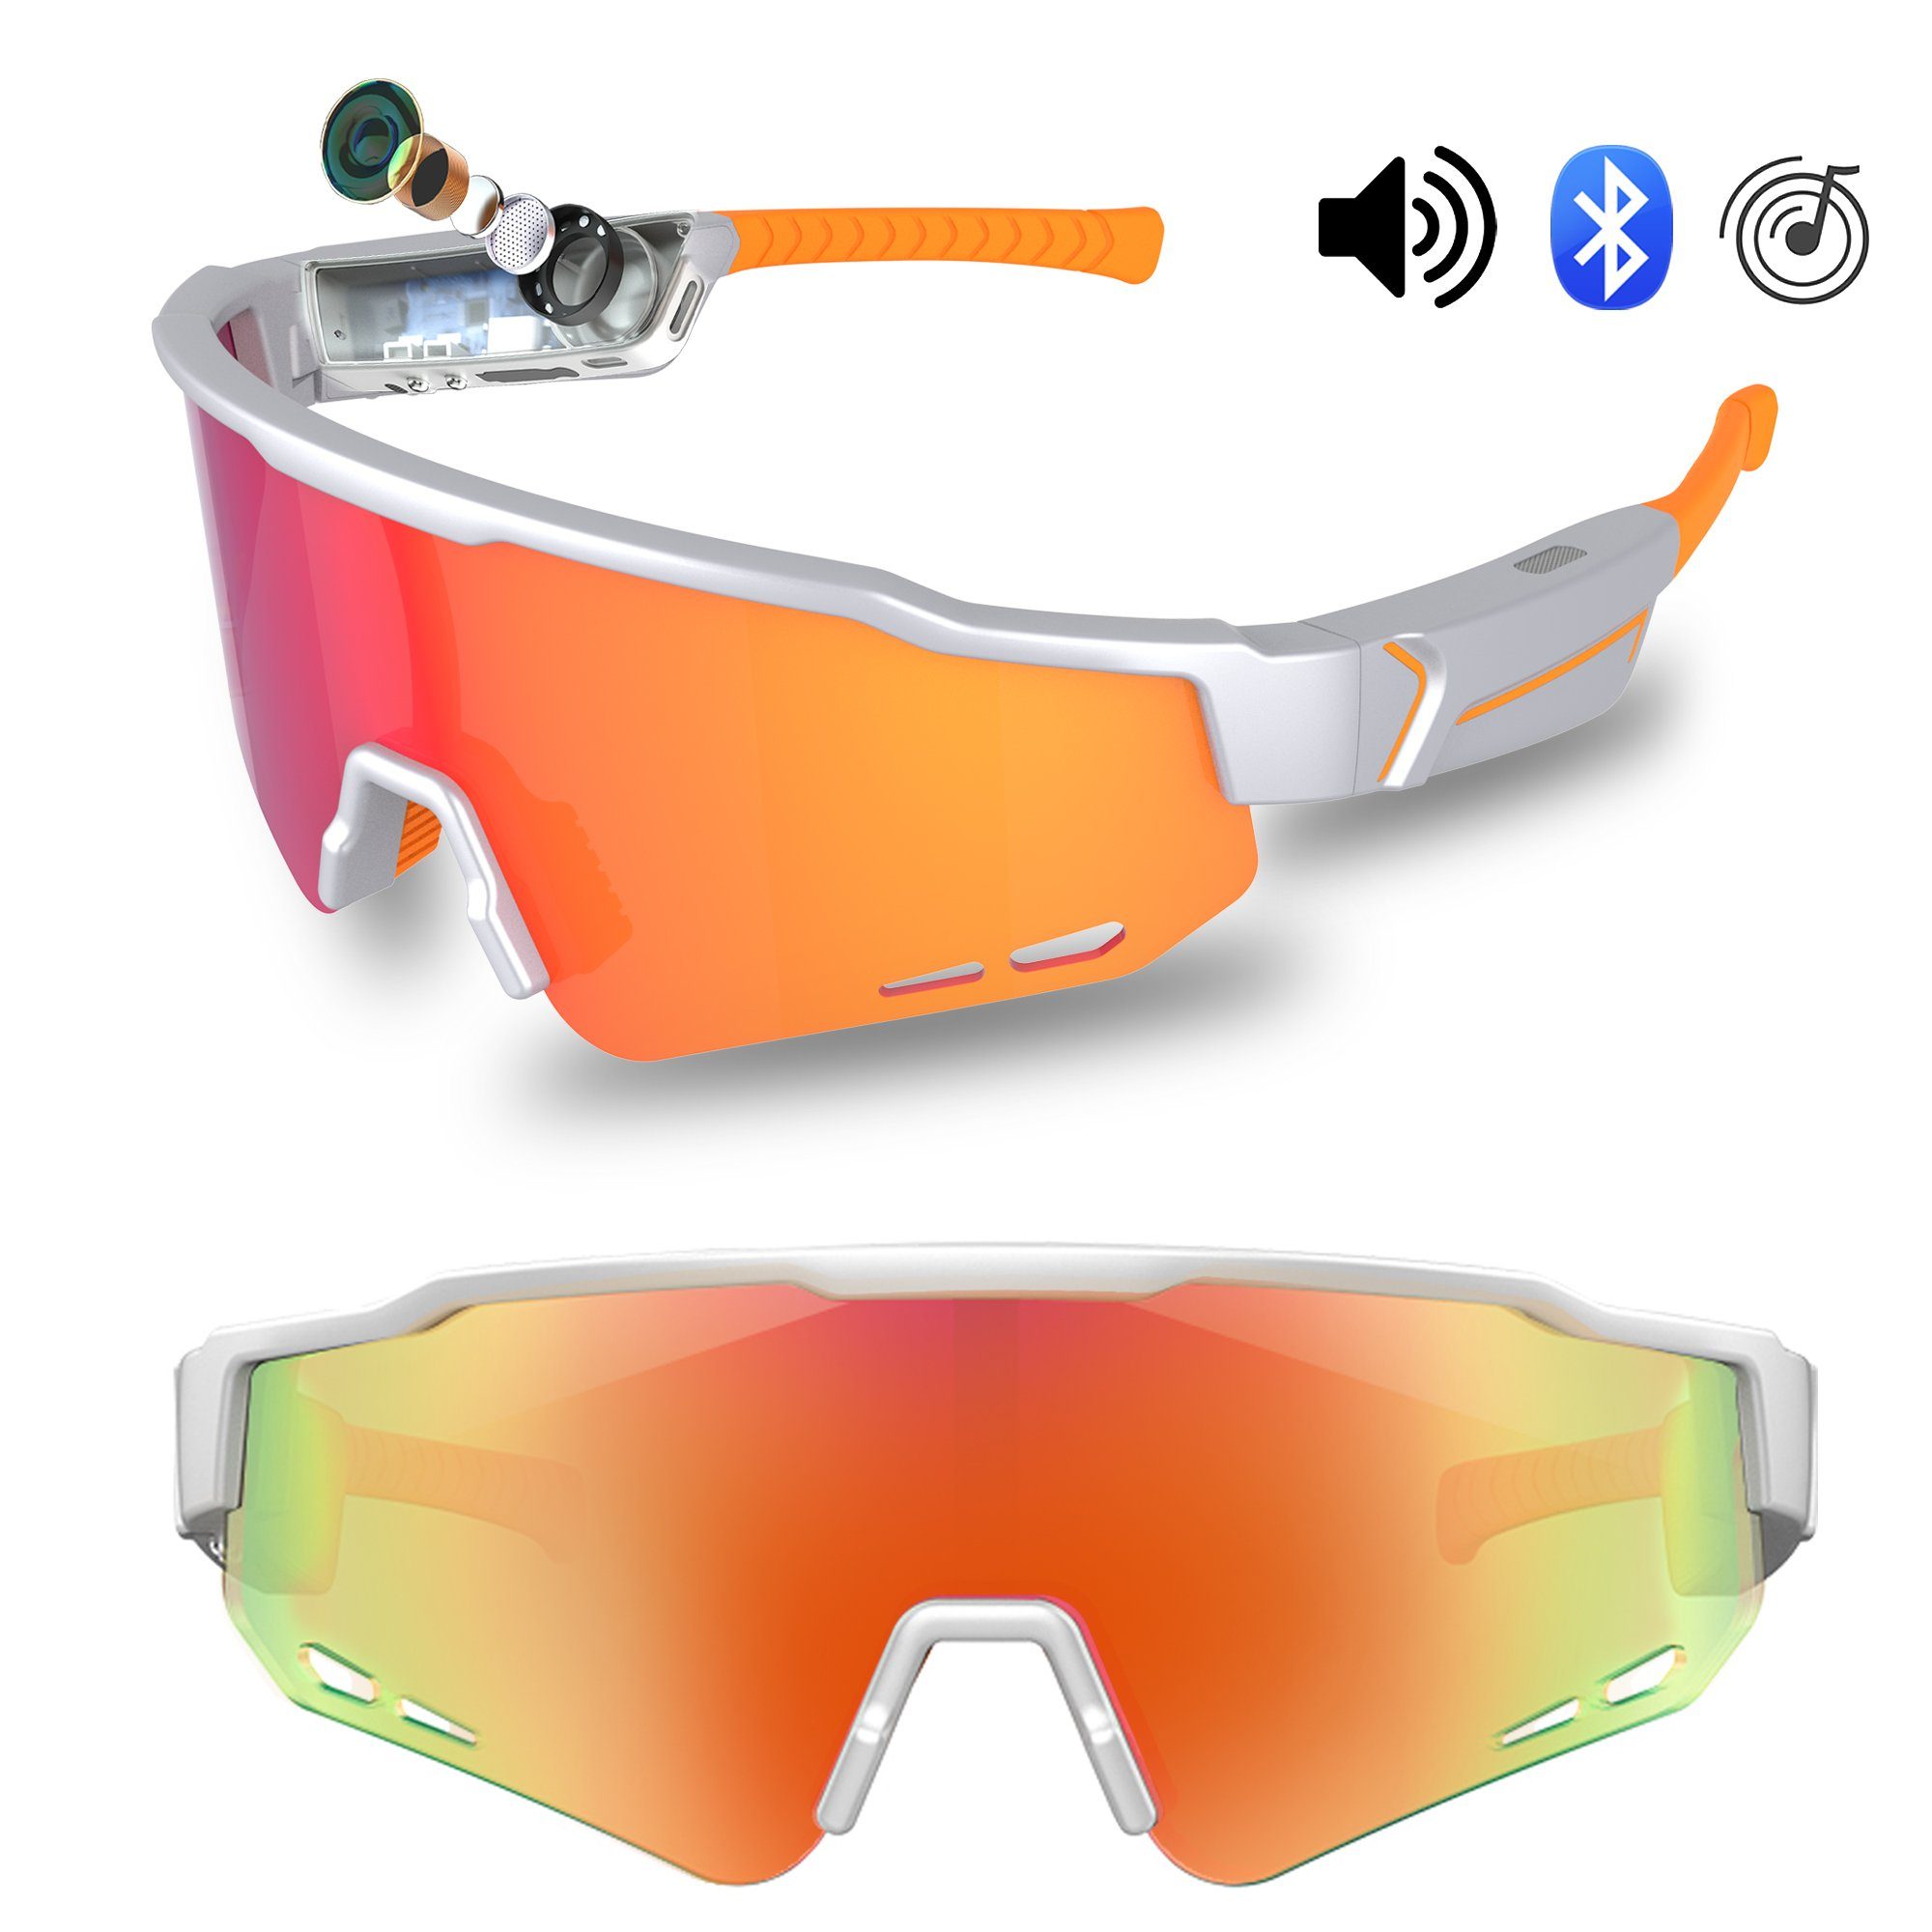 QTIYE Sonnenbrille Fahrradbrille,Polarisierte Radsportbrille Bluetooth Lautsprecher (Radsport, Baseball,Golf,Bergsteigen, Laufen, Angeln Radsportbrille, UV-400-Schutz für Herren und Damen Voice Assistant, Rauschunterdrückung,99 % der UVA-/UVB-Strahlen blockieren,Sportbrille)